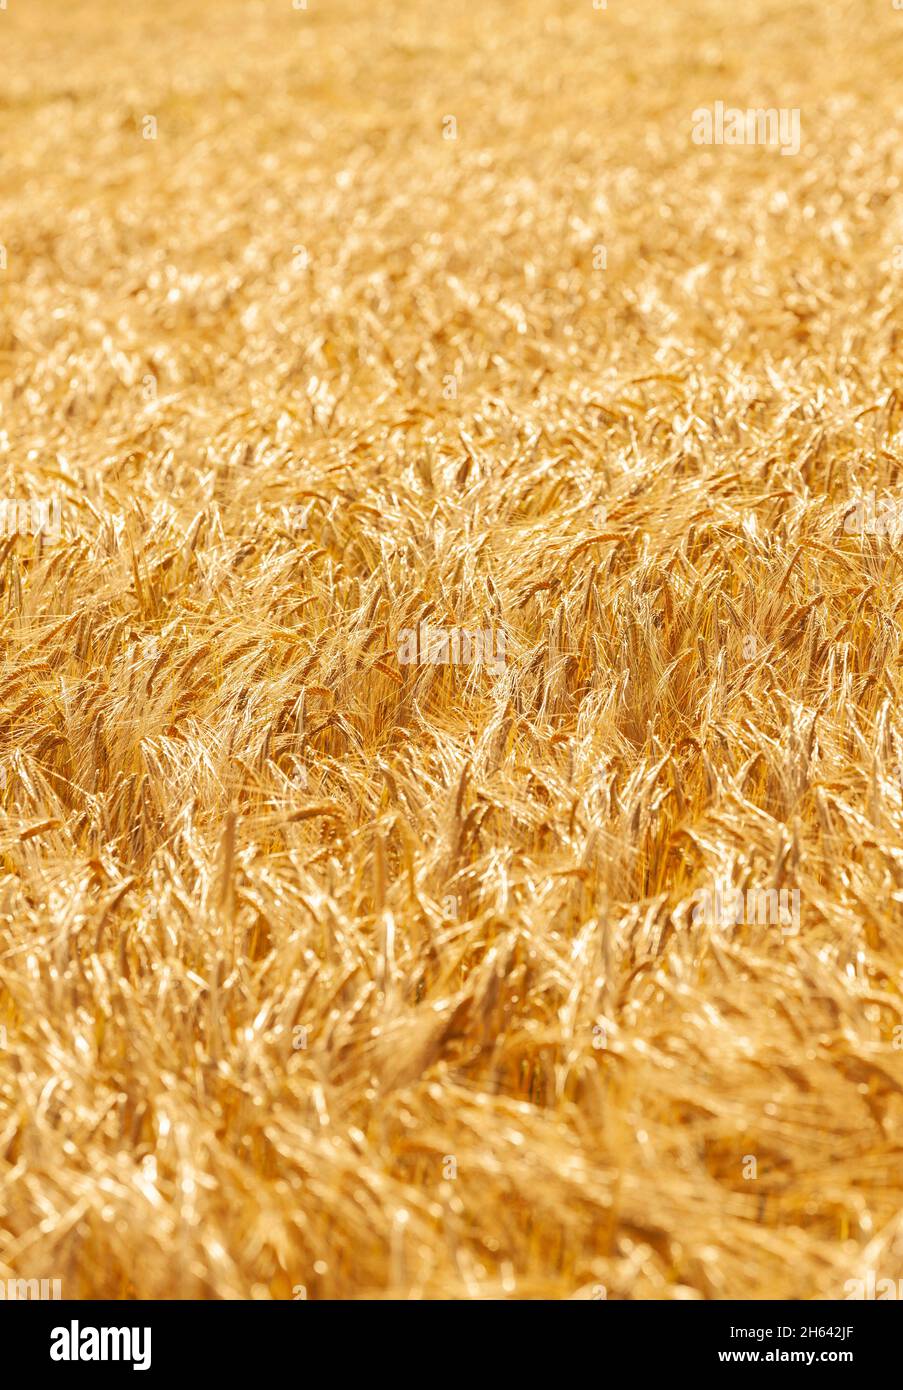 ripe ears of barley in a grain field in summer Stock Photo